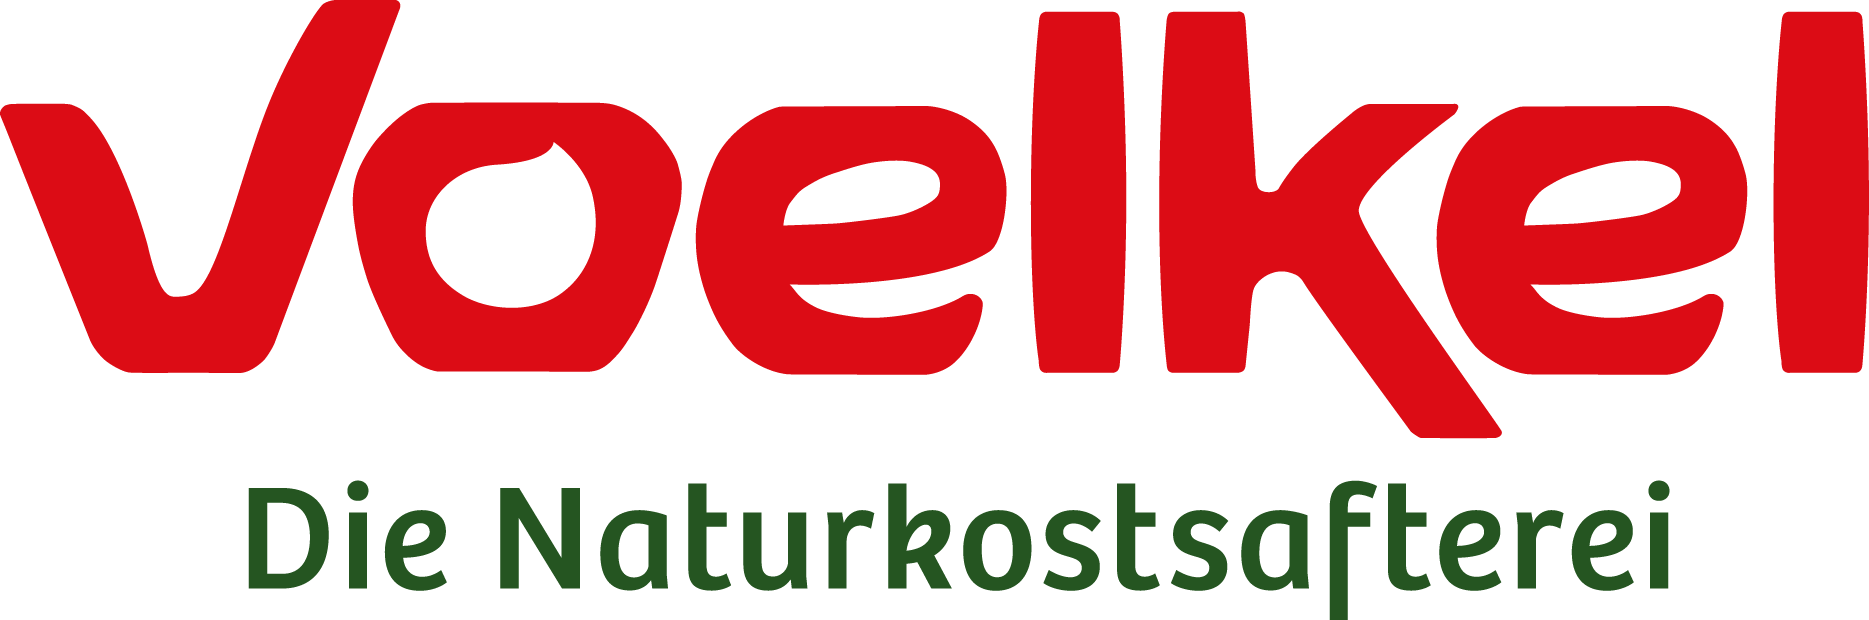 Voelker_Logo